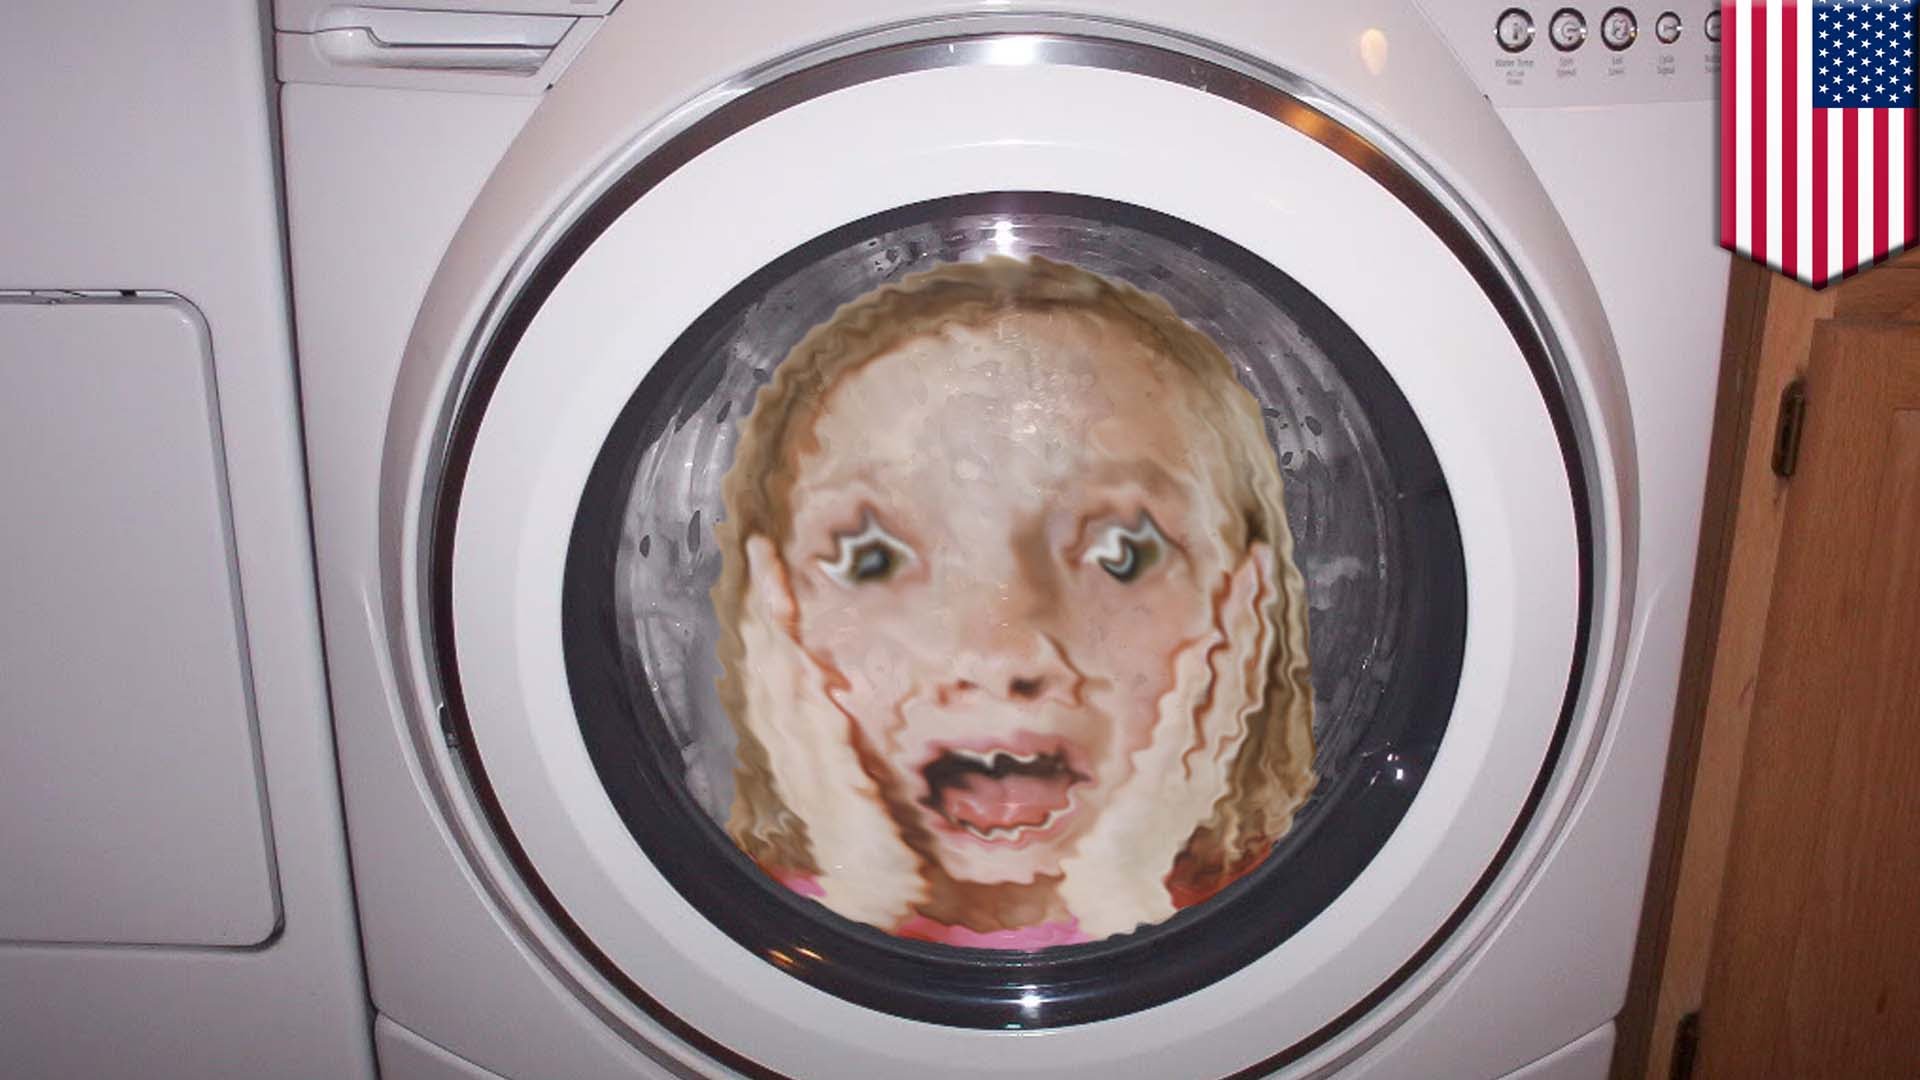 【危機一髪！】5歳女児が洗濯機で回され入院